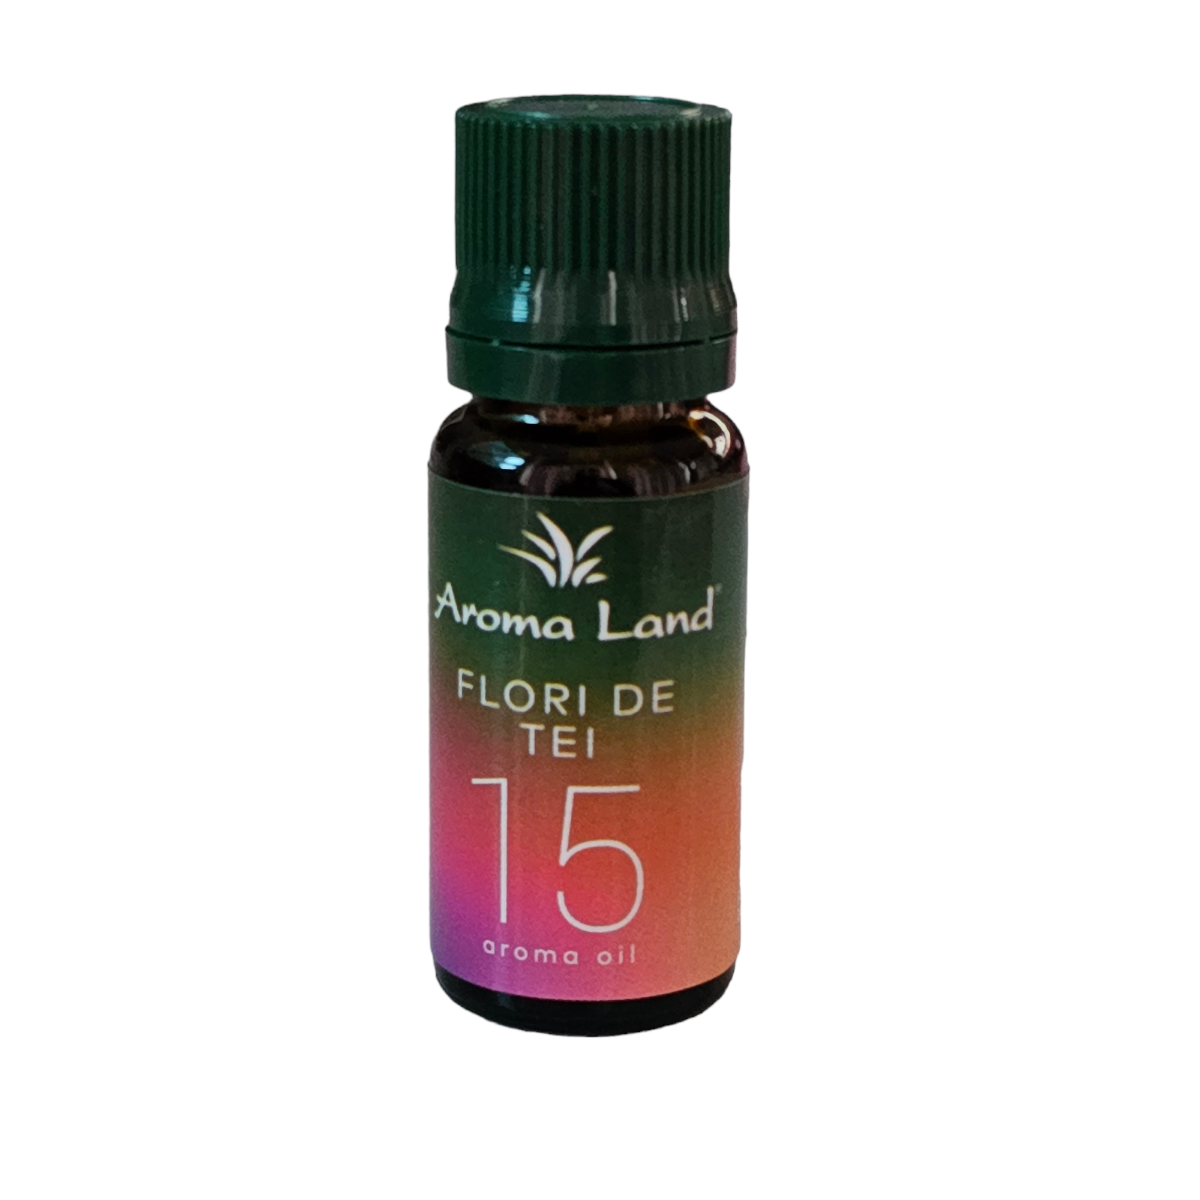 Ulei parfumat pentru aromoterapie Flori de tei 15